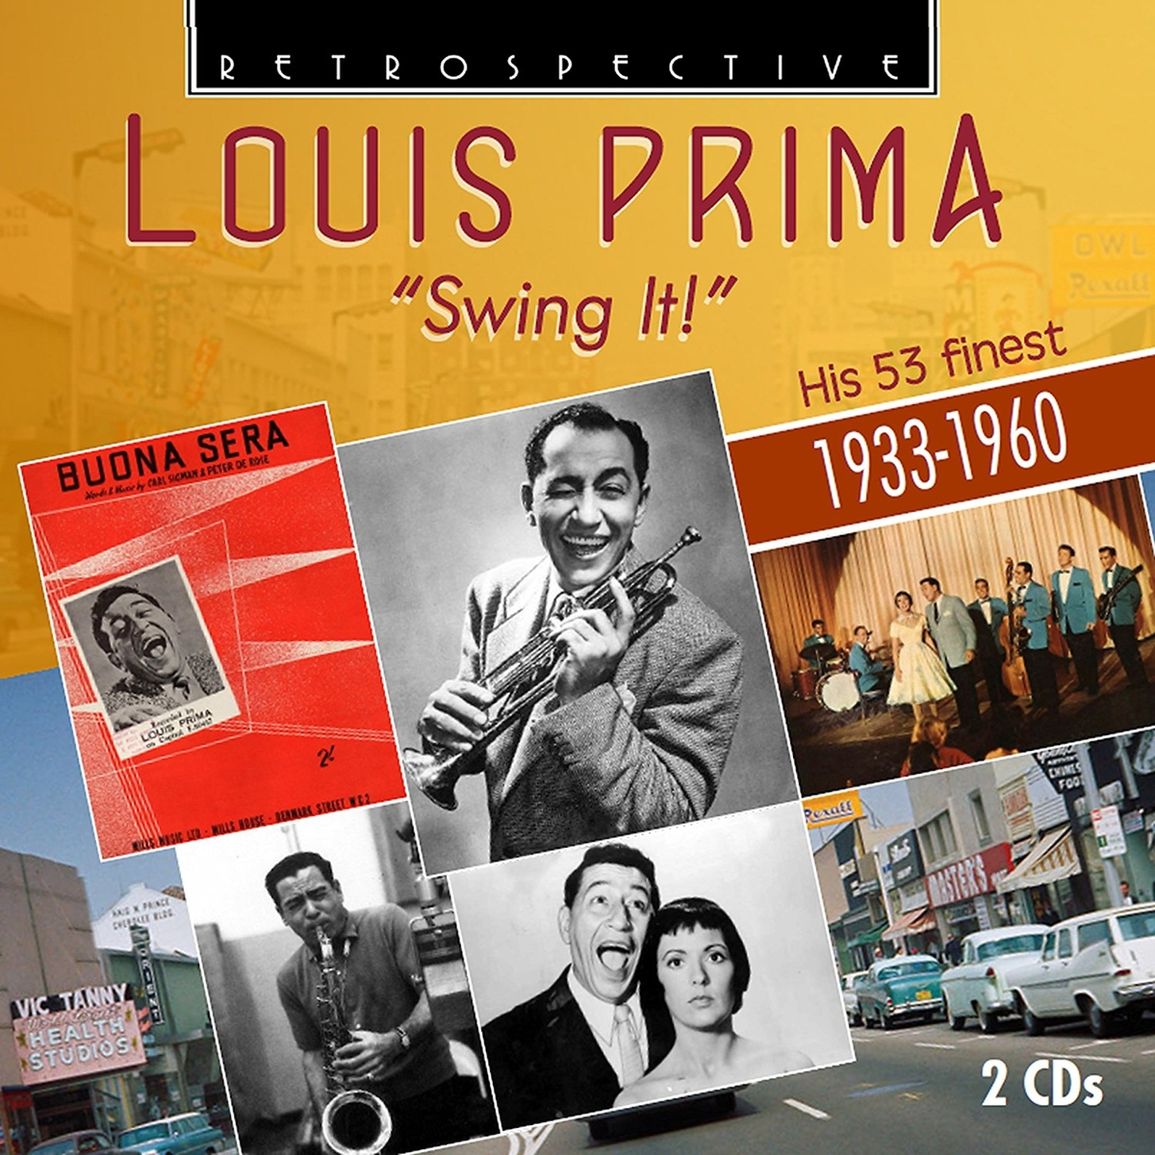 Louis Prima – The Best, The Wildest (Vinyl 2LP)